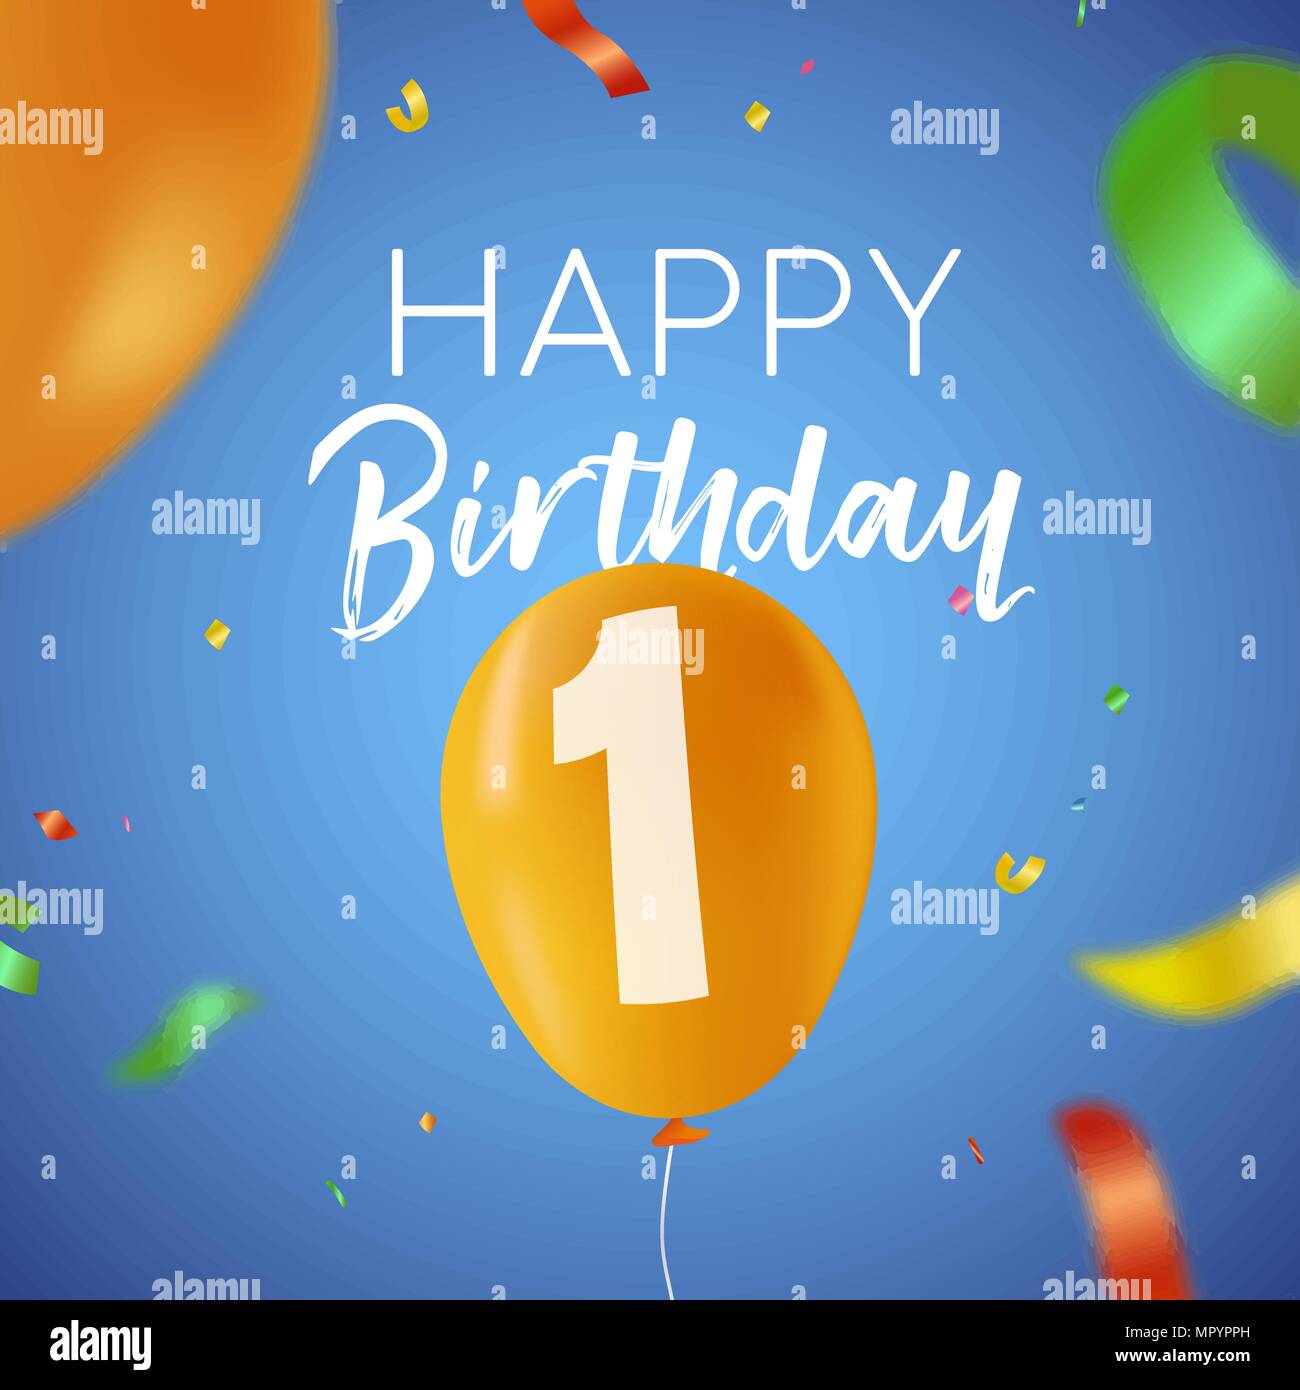 Happy Birthday 1 ein Jahr Spaß Design mit Ballon Anzahl und bunte Konfetti Dekoration. Ideal für Party Einladung oder Grußkarte. EPS 10 Vektor. Stock Vektor